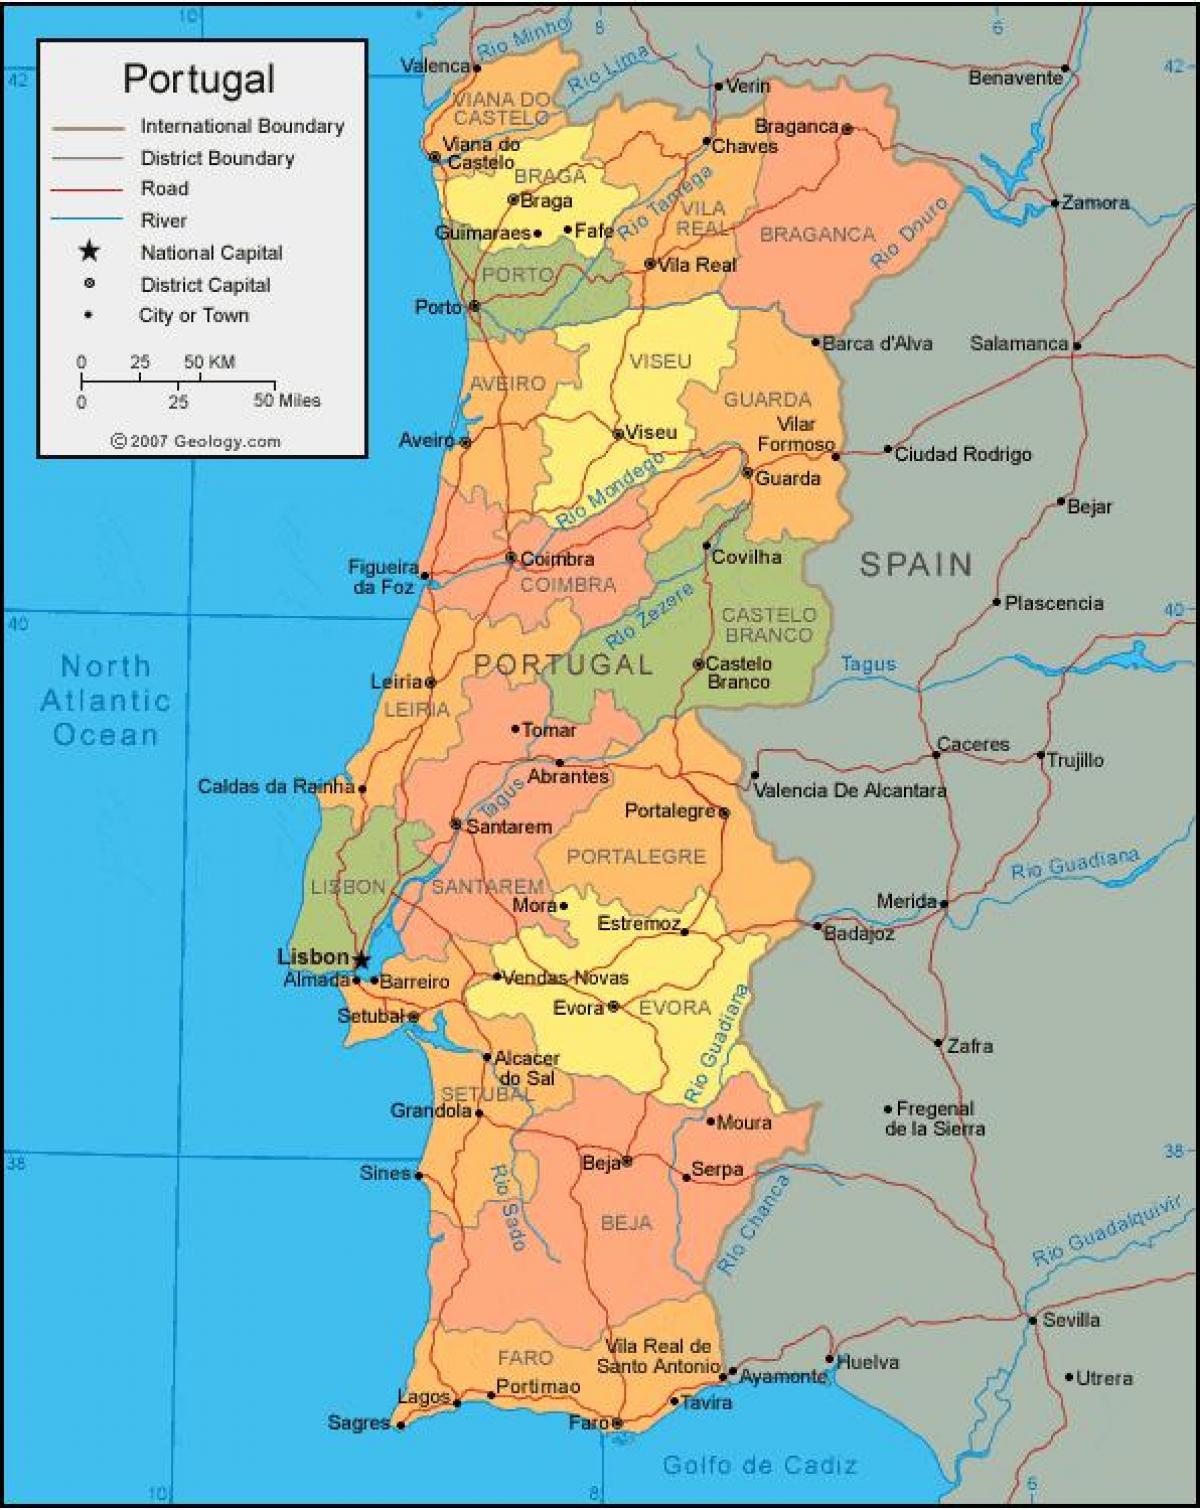 portugalin kartta Portugali kartta   Kartta Portugalin valtiota (Etelä Euroopassa  portugalin kartta